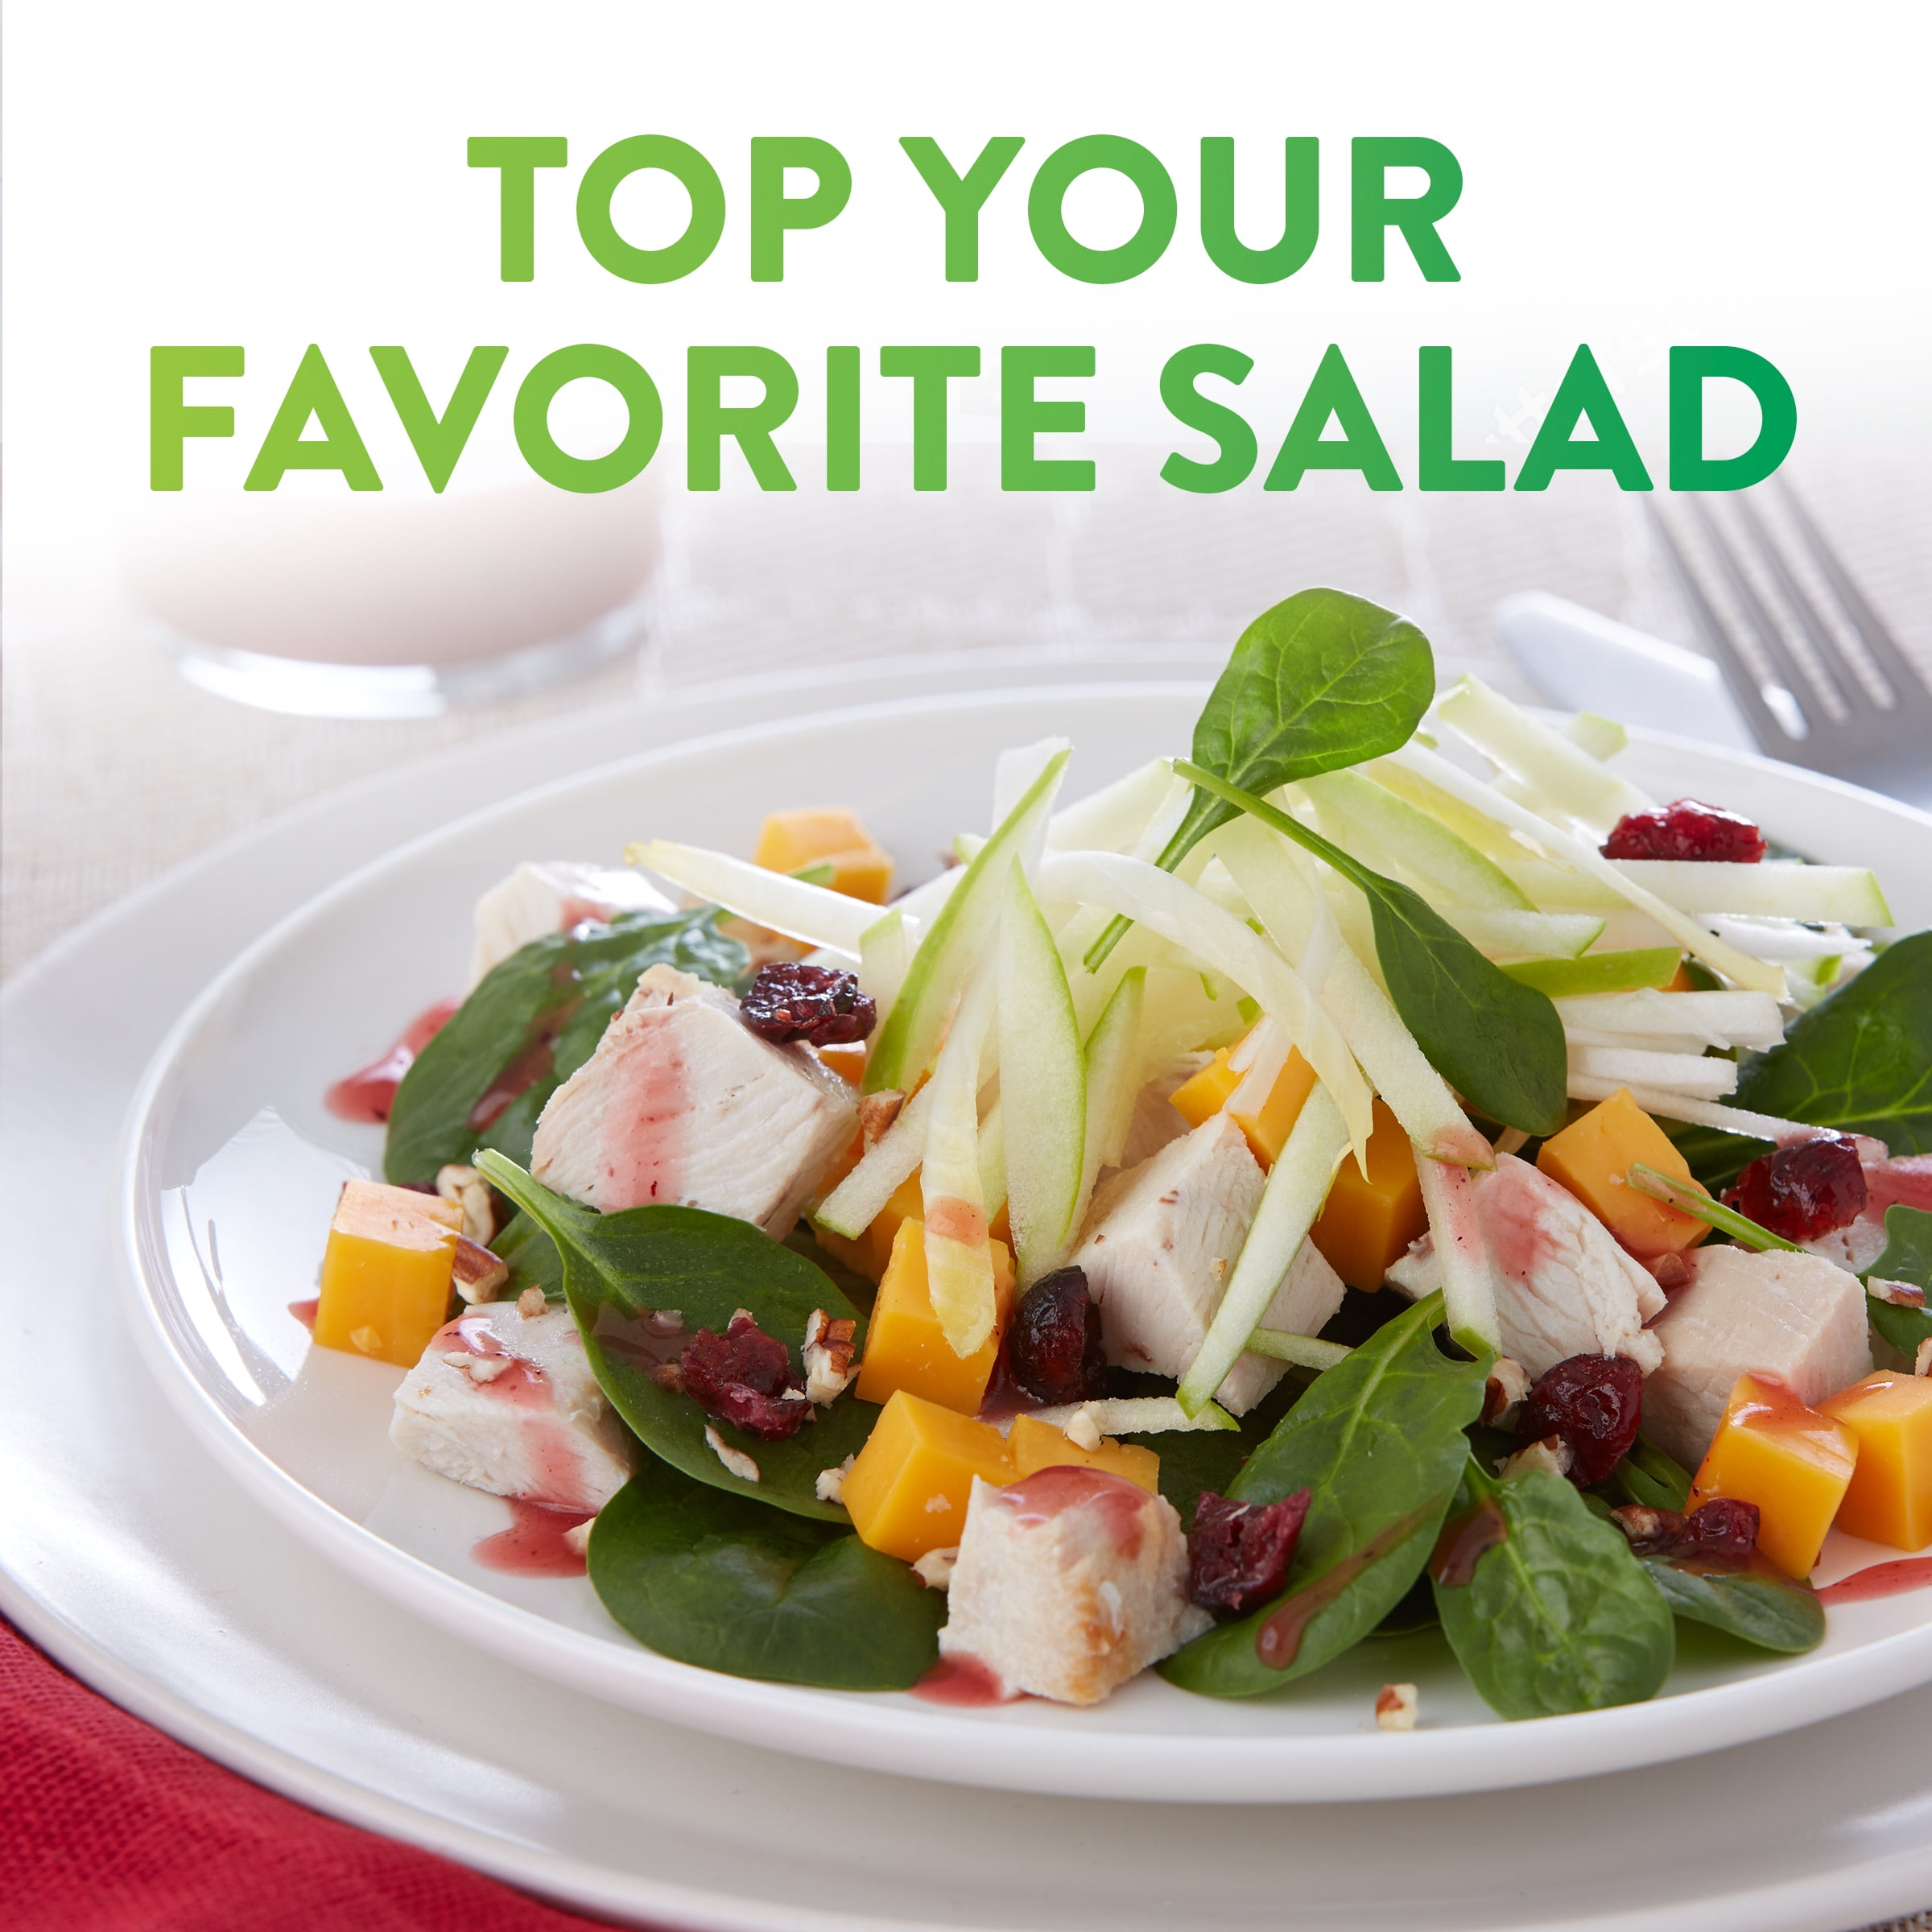 Braswell's Raspberry Vinaigrette Salad Dressing 9 oz Bottle